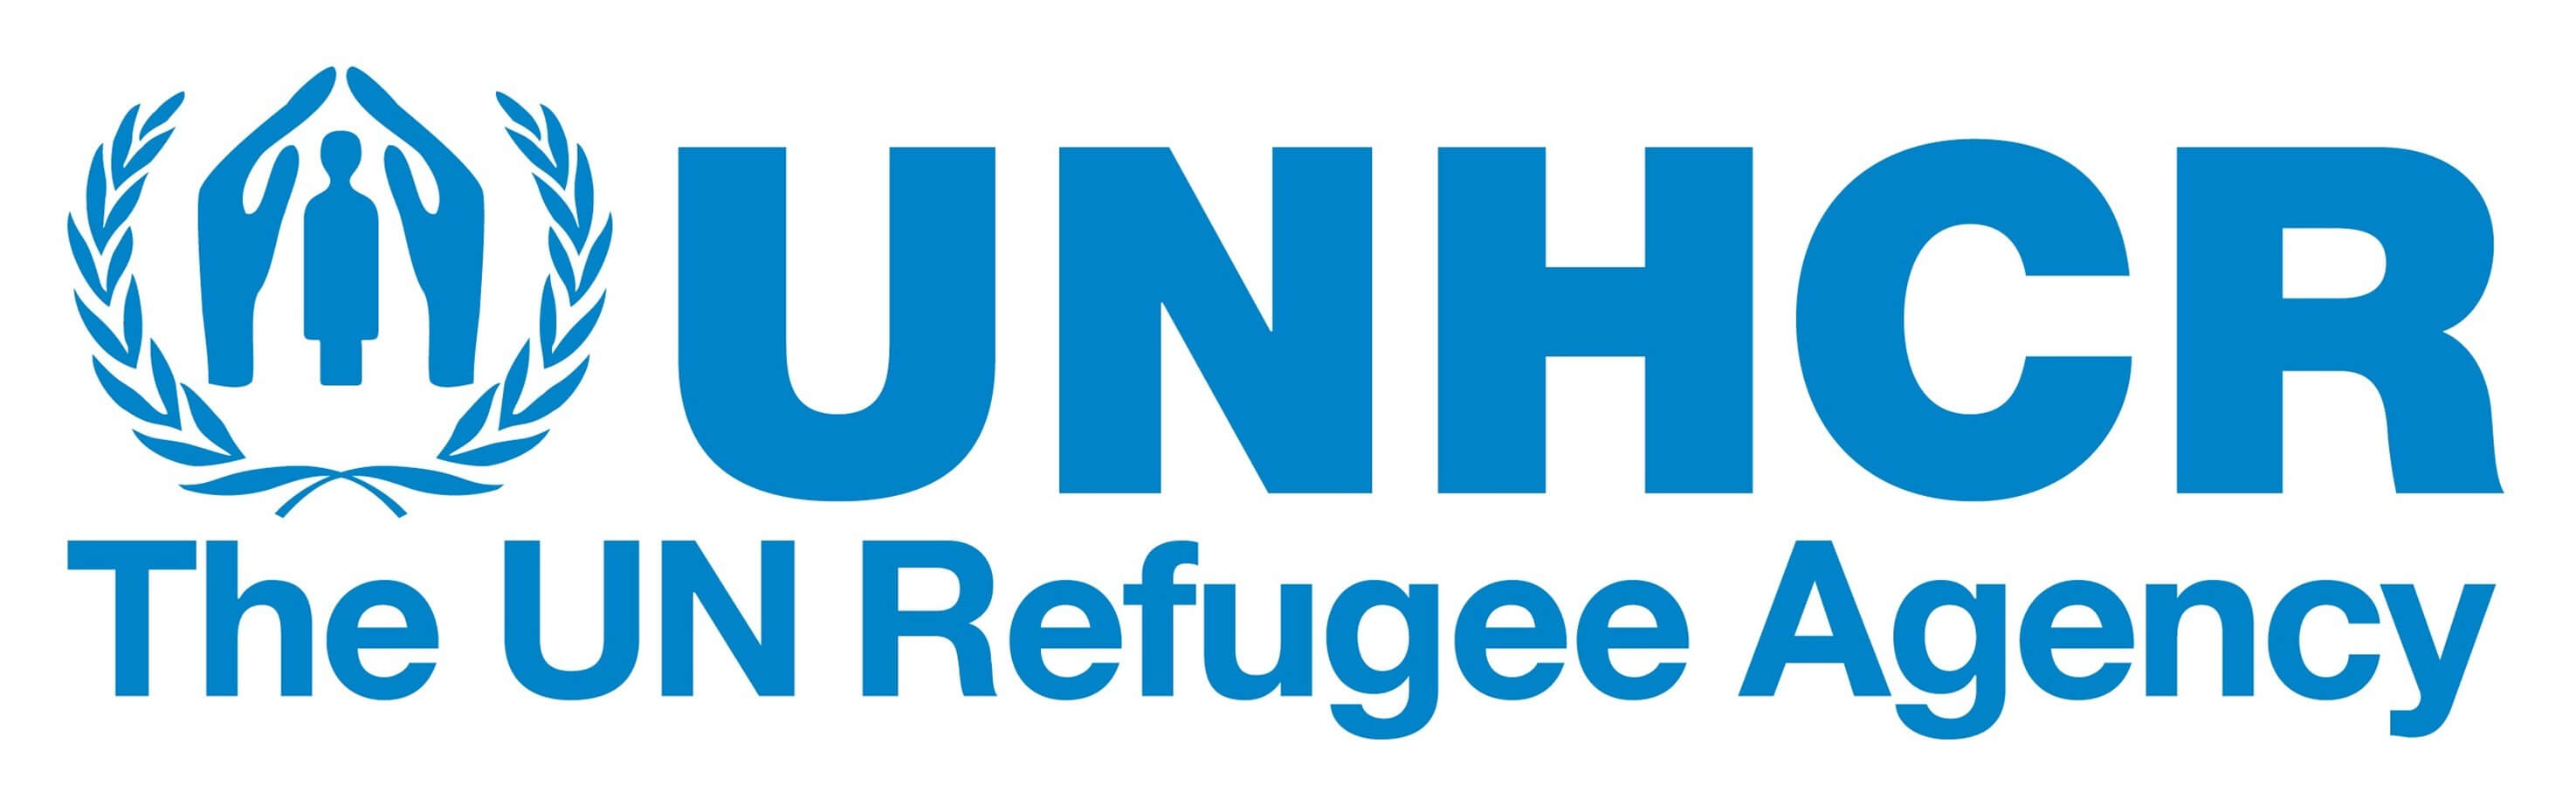 Das Flüchtlingshilfswerk der Vereinten Nationen UNHCR